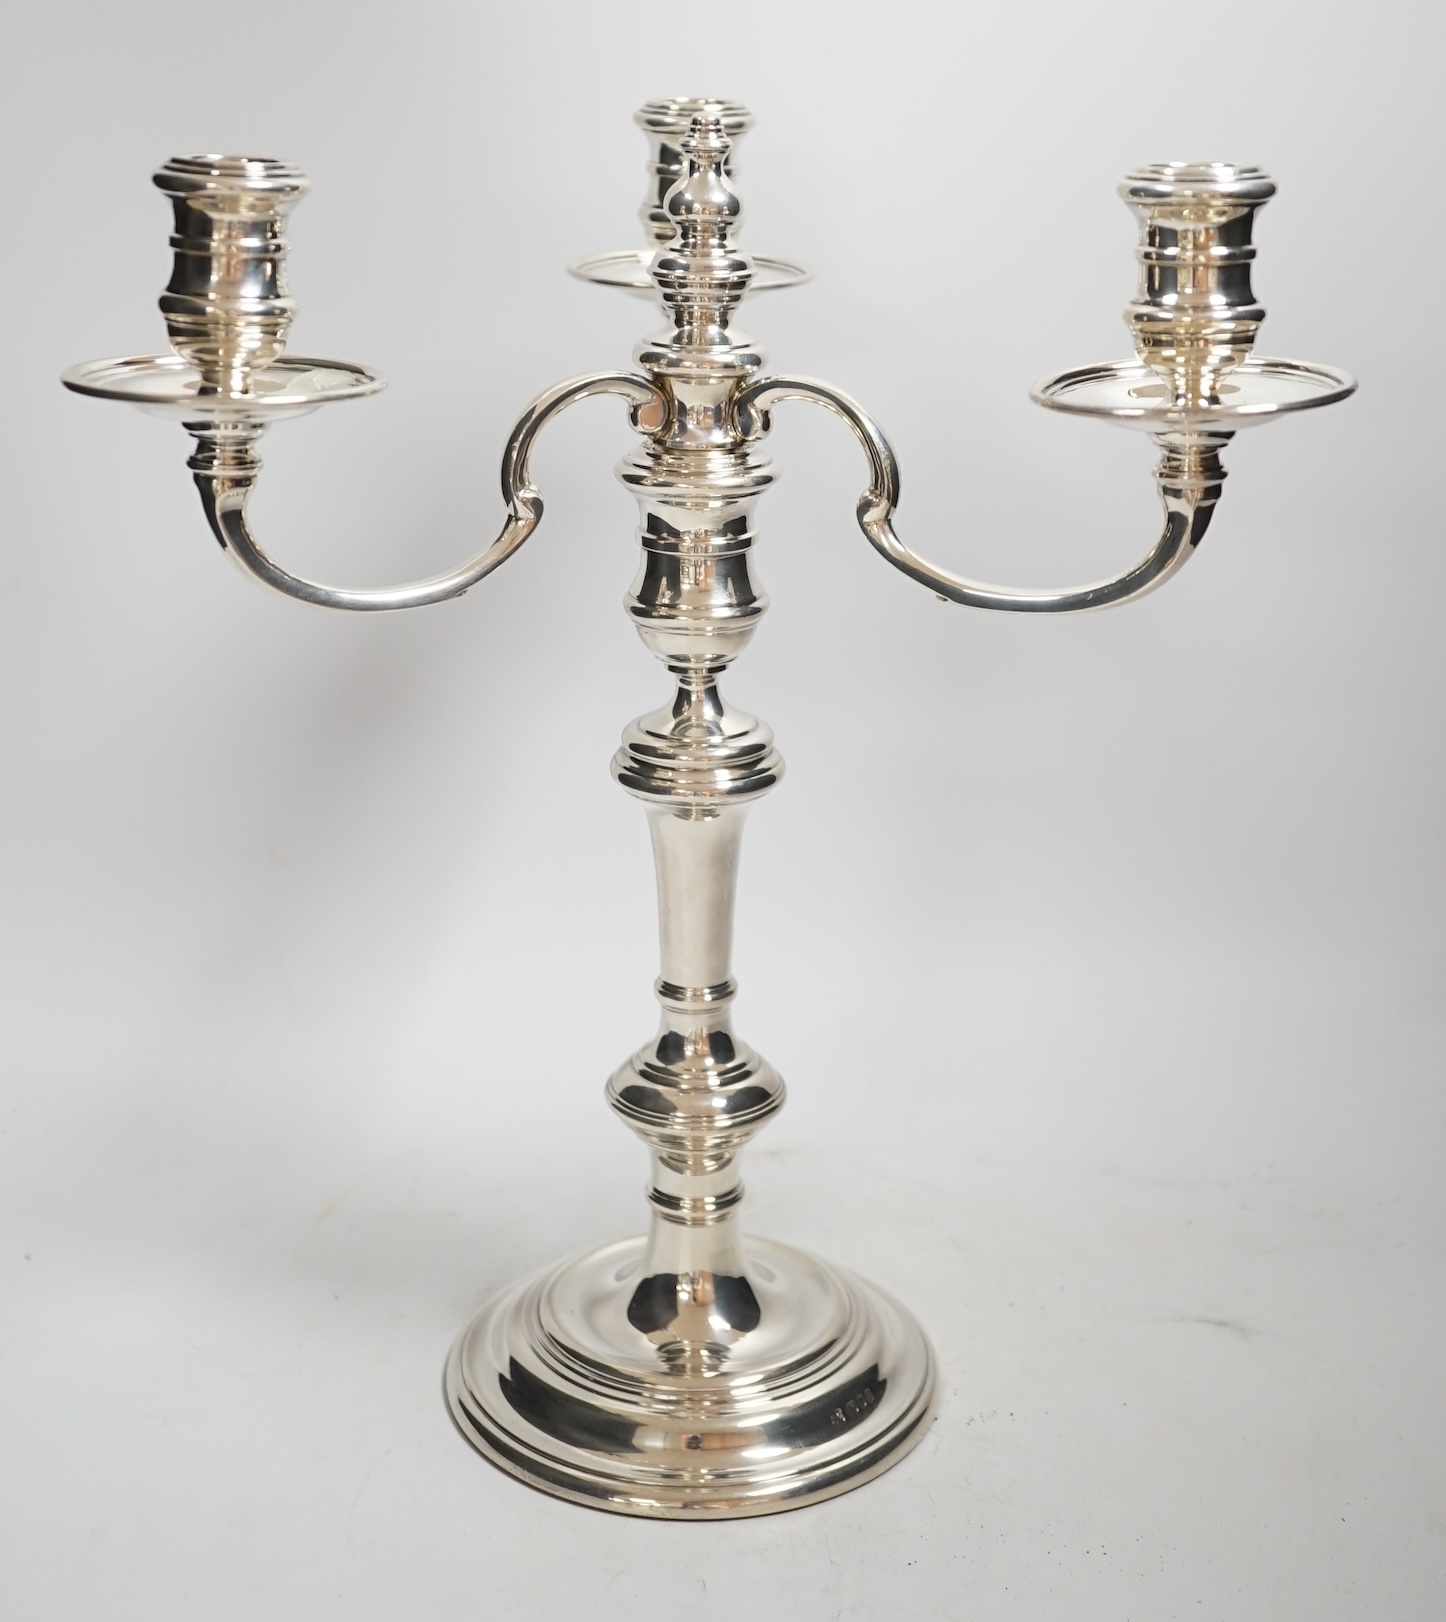 An Elizabeth II silver three branch, three light candelabrum, by William Comyns & Sons Ltd, London, 1965, height 34cm, weighable silver 16oz.